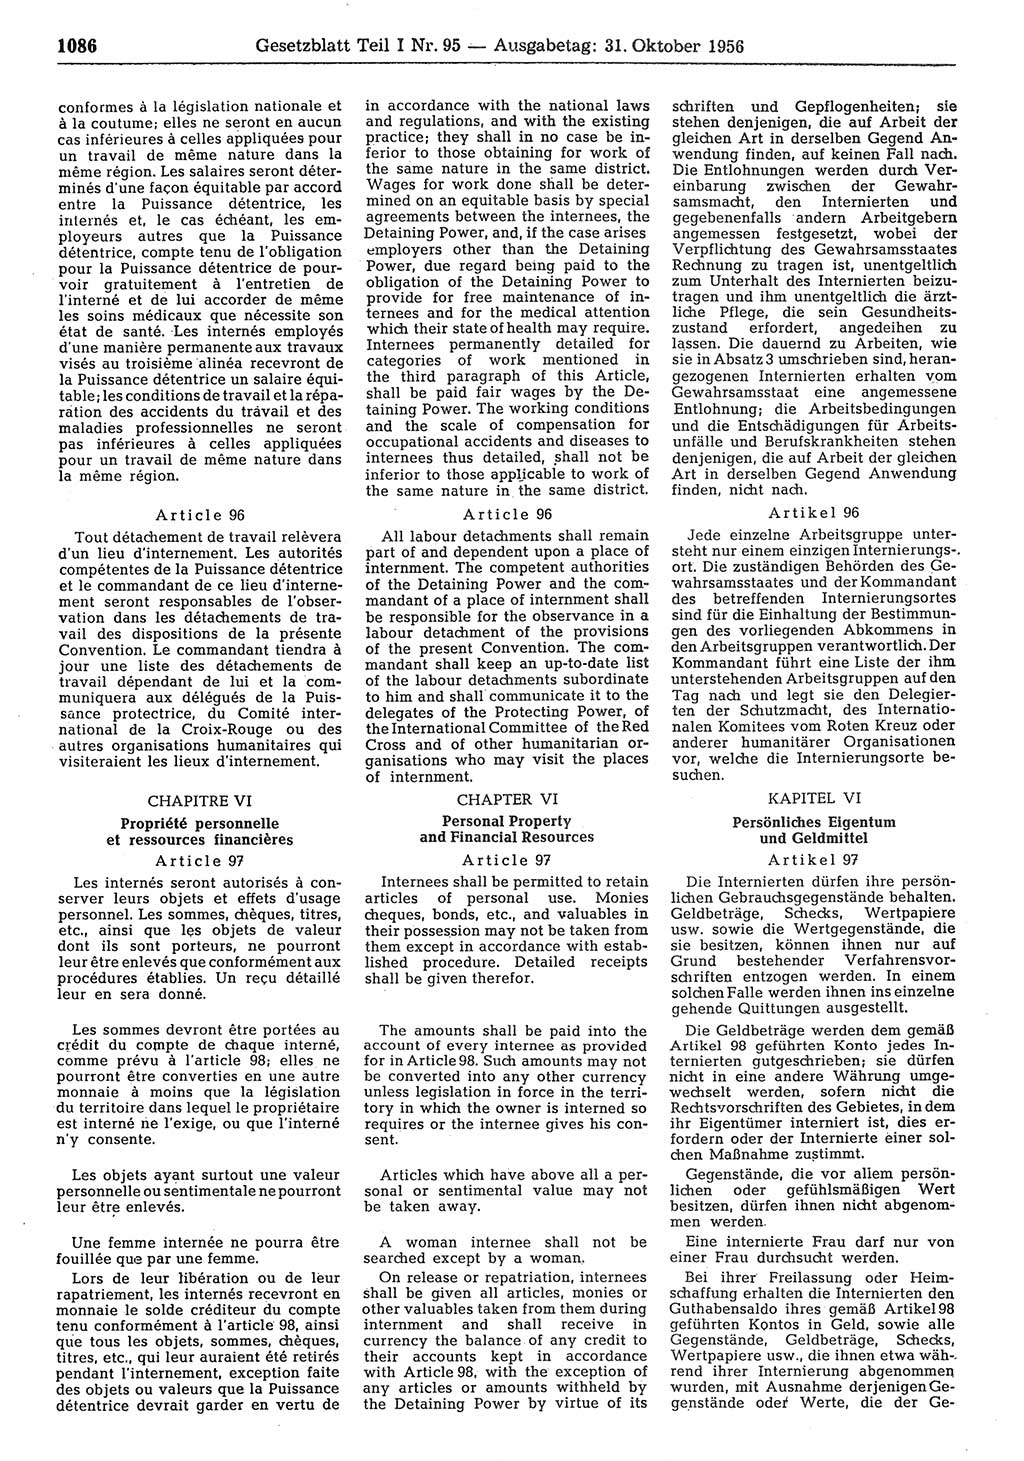 Gesetzblatt (GBl.) der Deutschen Demokratischen Republik (DDR) Teil Ⅰ 1956, Seite 1086 (GBl. DDR Ⅰ 1956, S. 1086)